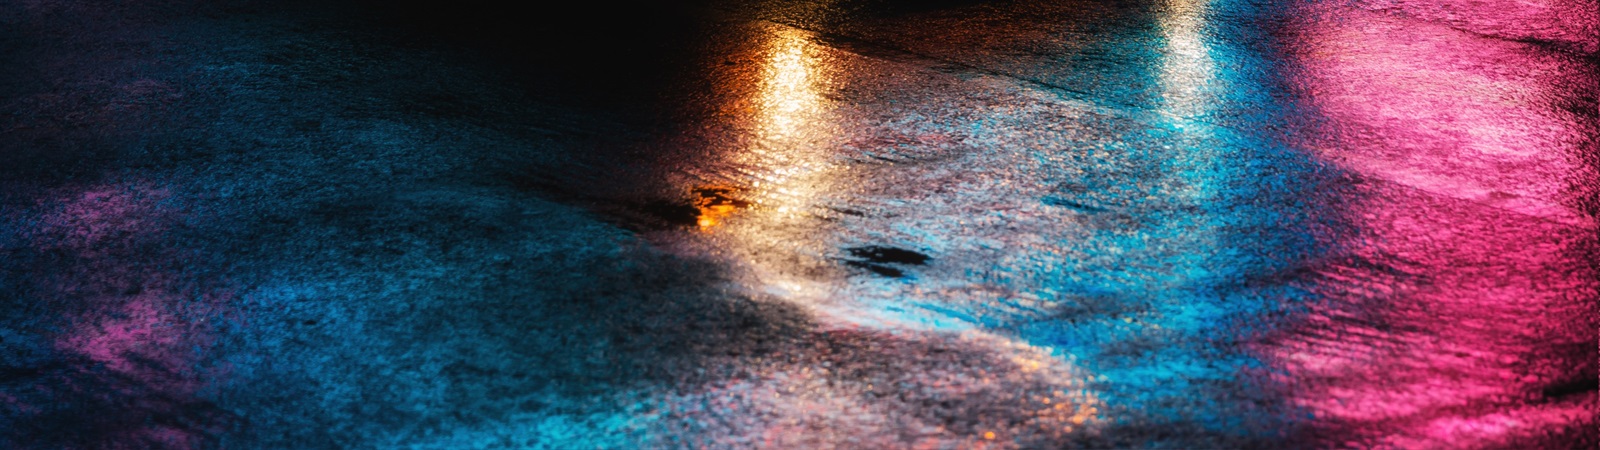 Wet street scene lit by coloured lighting